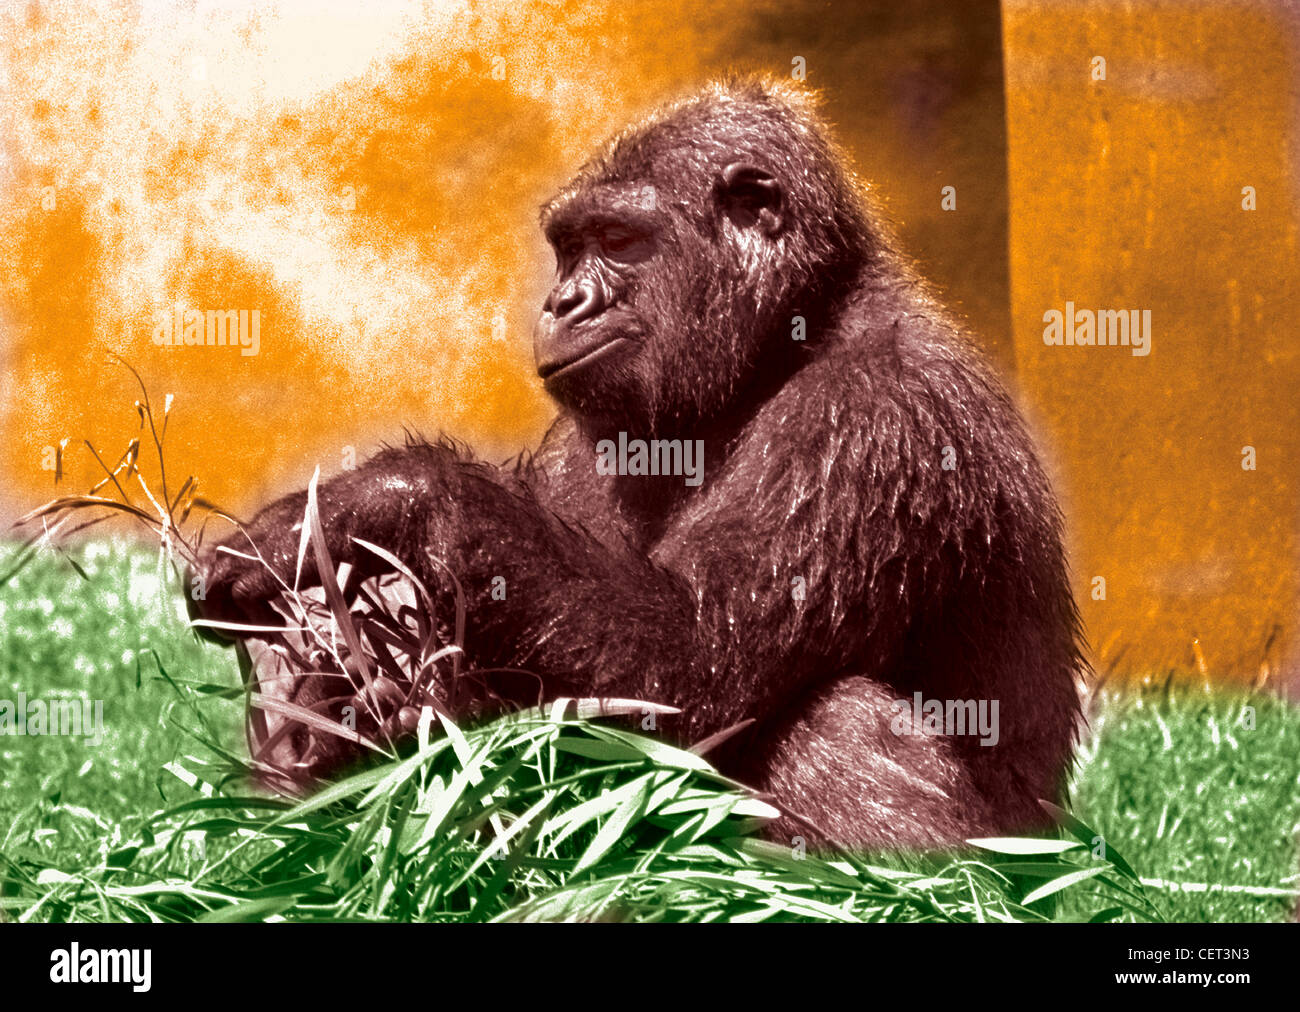 Profil von Gorilla in Grass mit Wand hinter.  Farbige horizontale Foto Hand.  Gute Gesichtsausdruck. Humorvolle Stockfoto